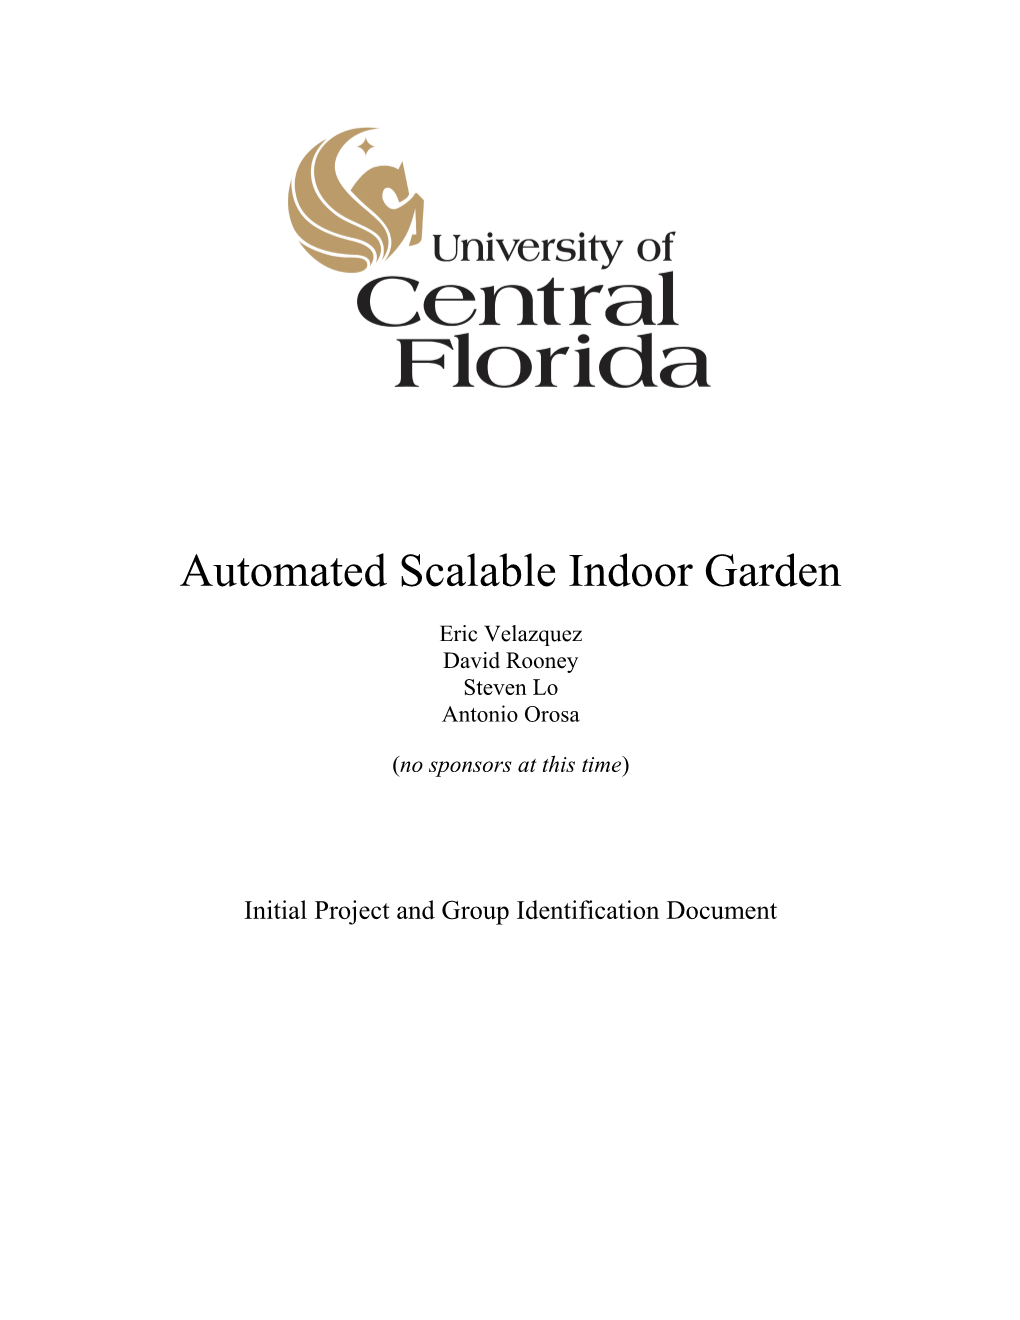 Scalable Indoor Garden (Current Draft)